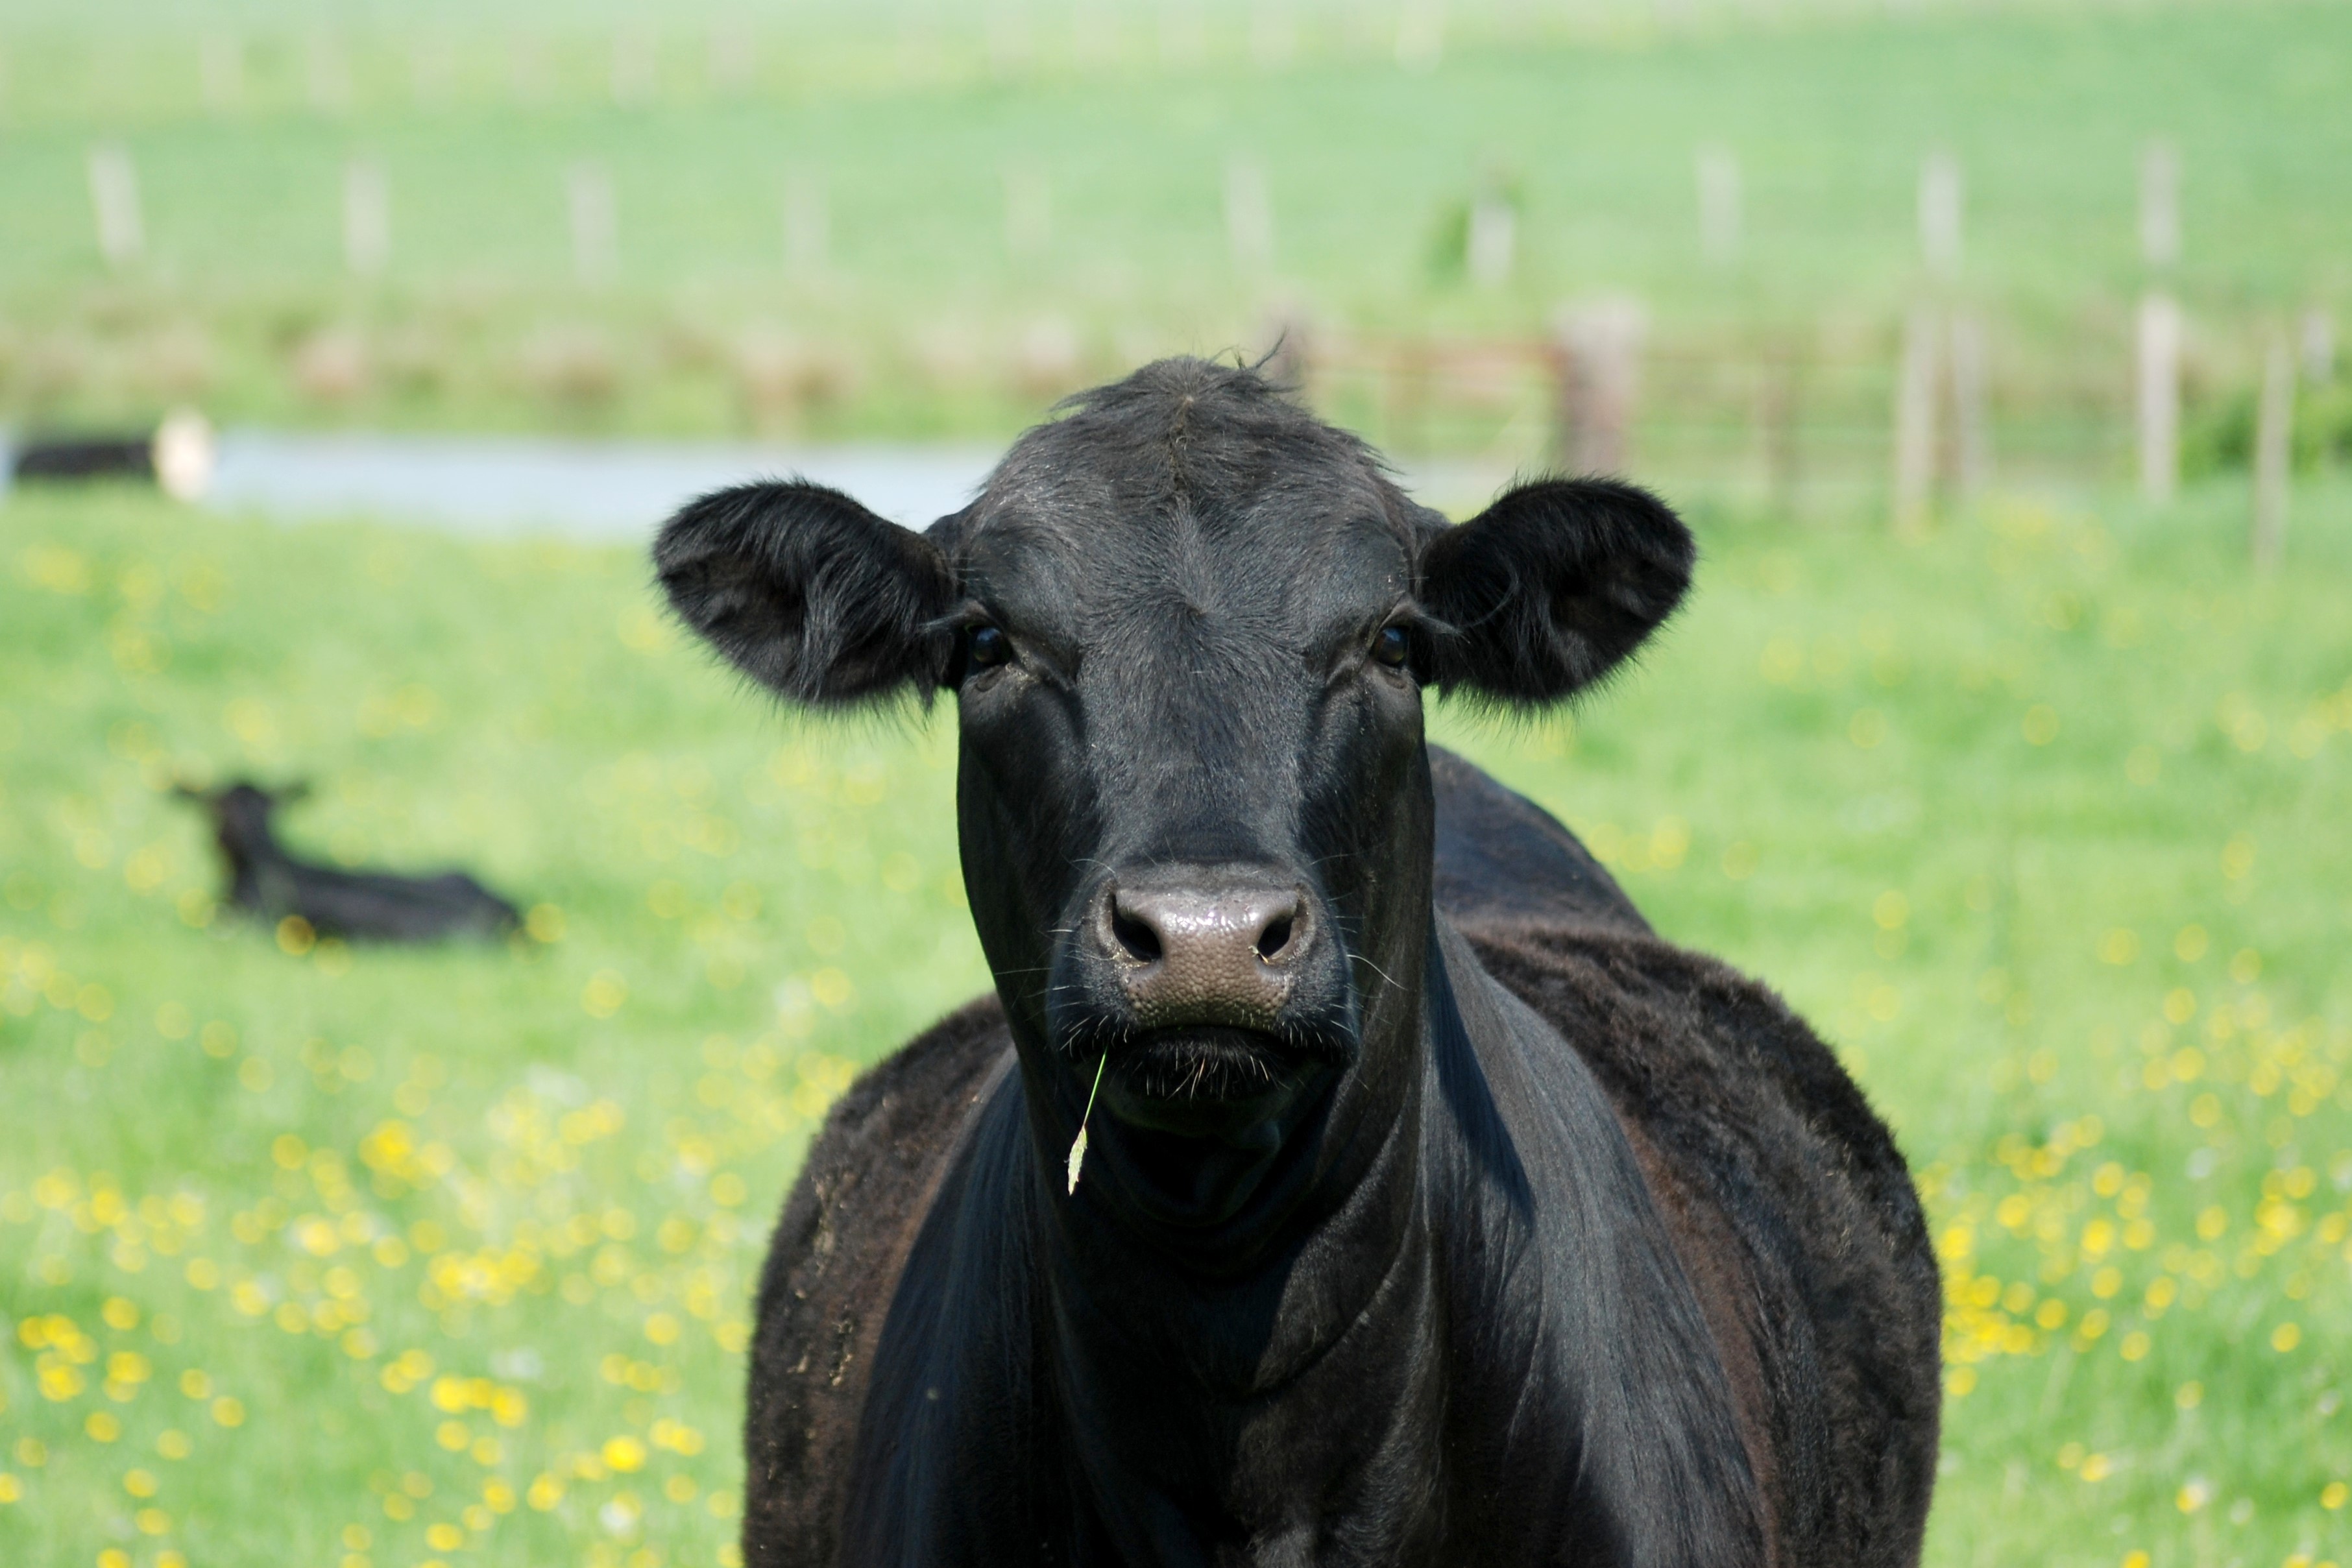 Black cow in green field